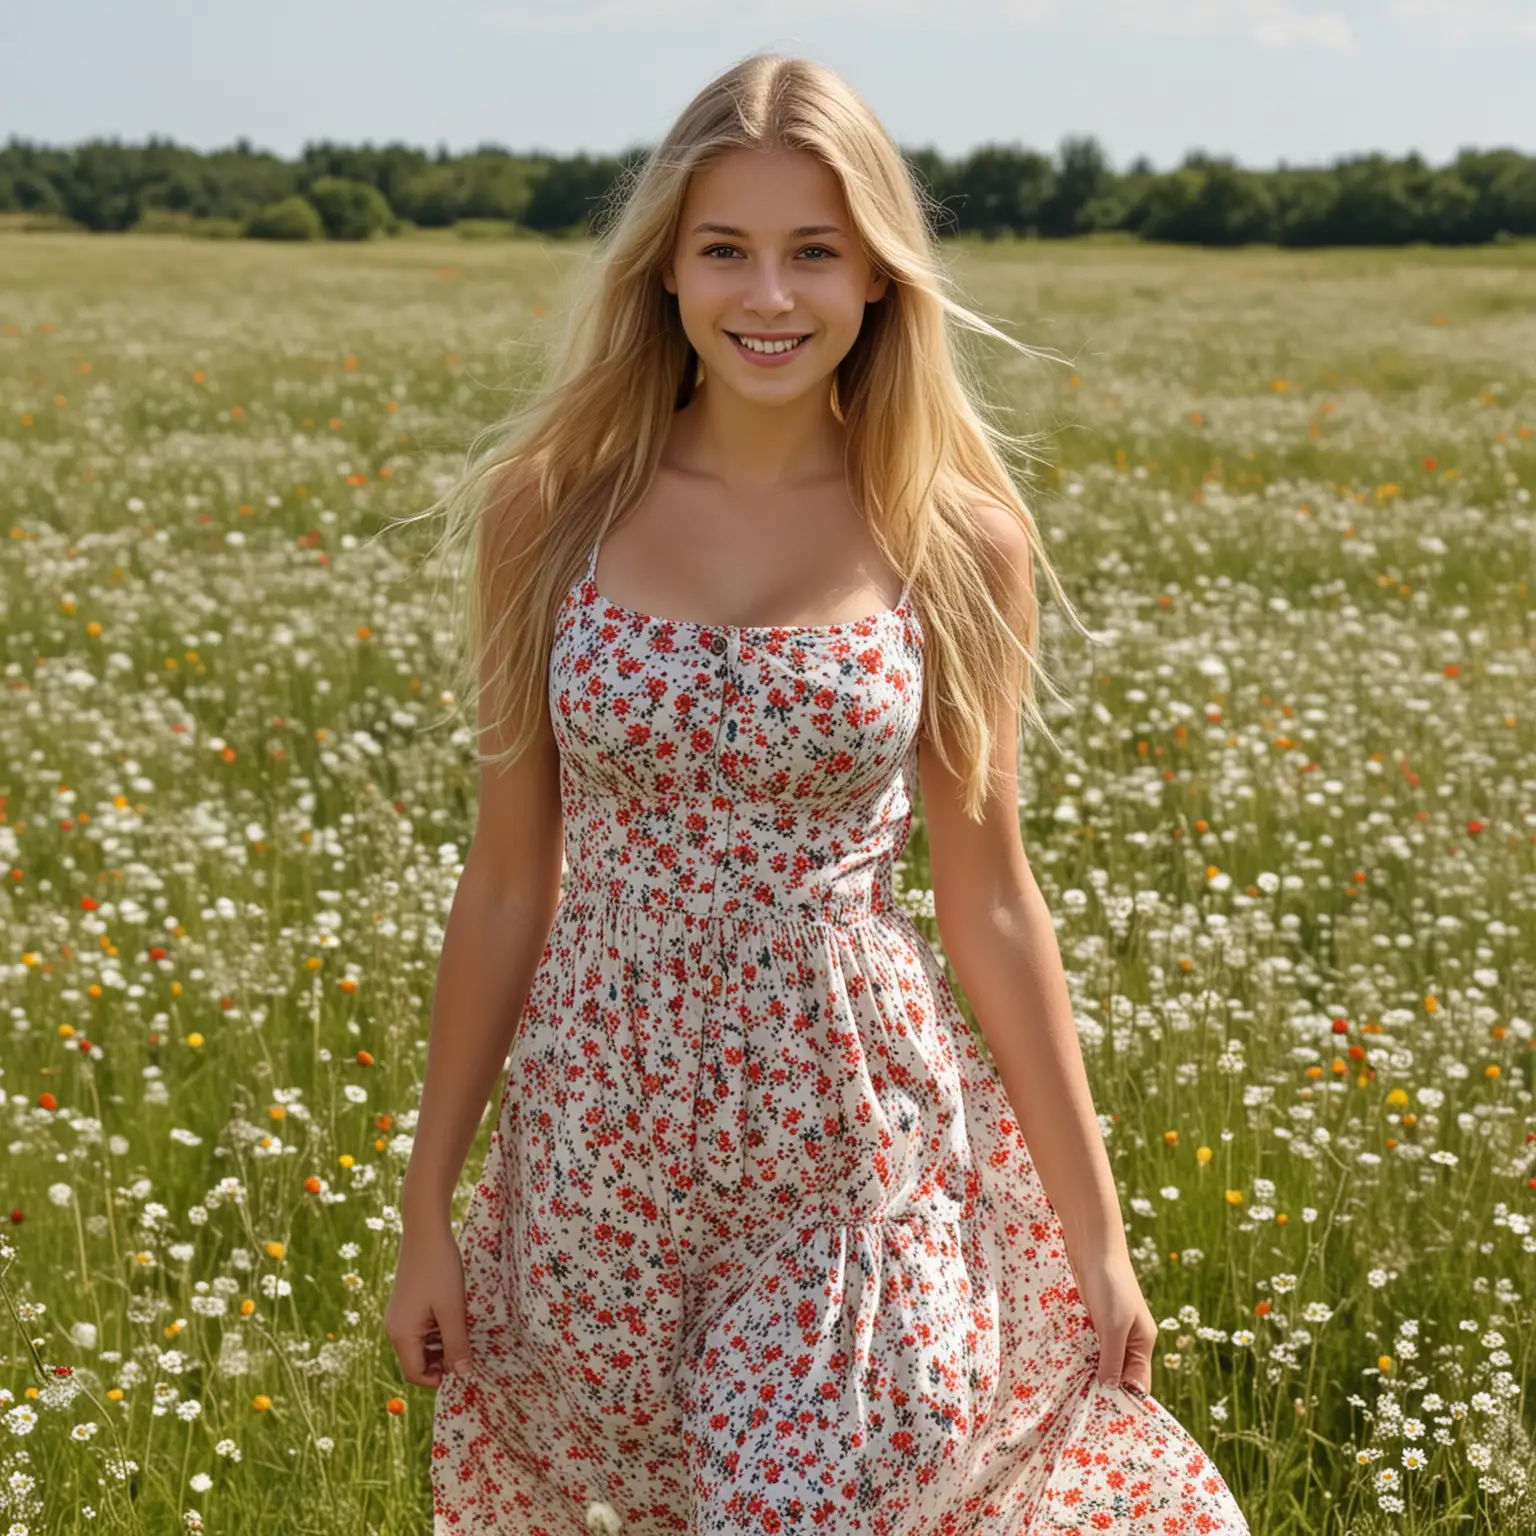 Top Model aus Frankreich, blond, lange haare, 16 jahre, sehr großer busen, läuft im sommerkleid über eine Blumenwiese, gut gelaunt, lächelt
